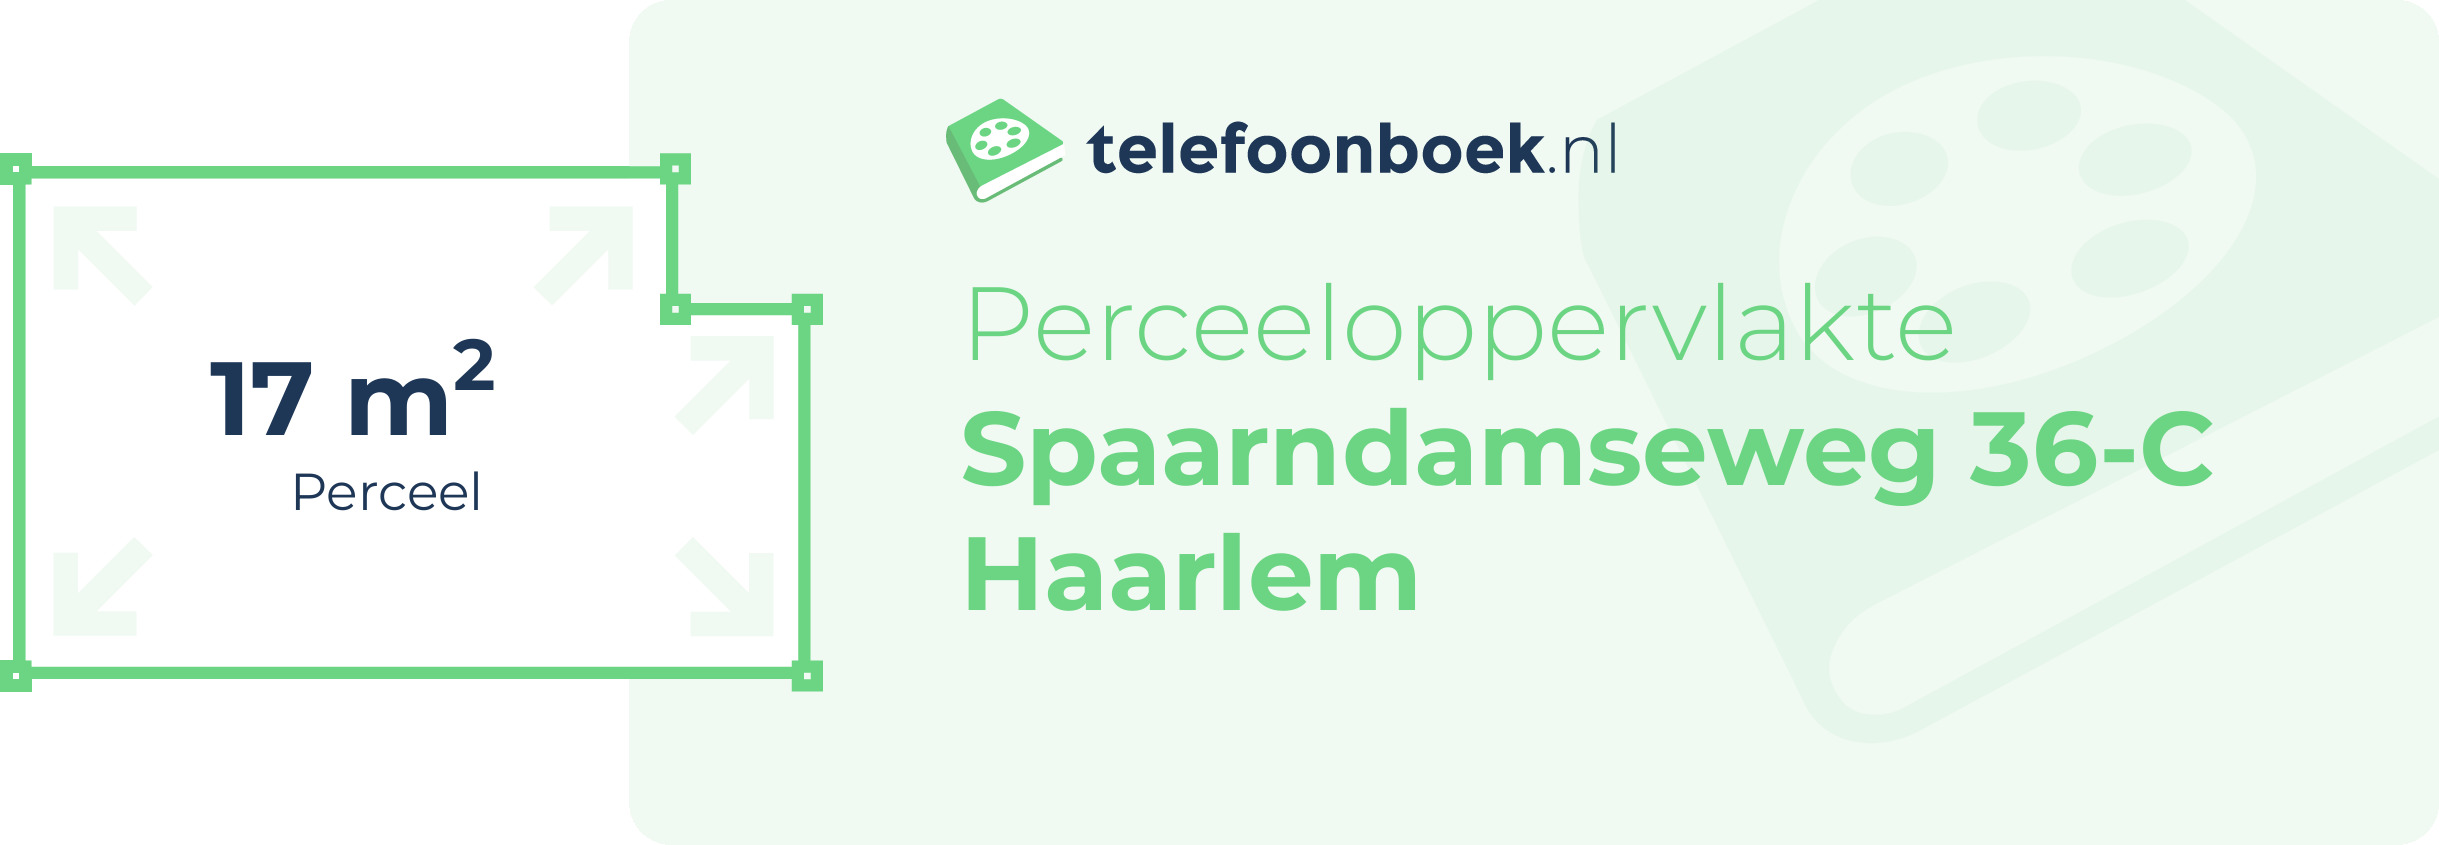 Perceeloppervlakte Spaarndamseweg 36-C Haarlem